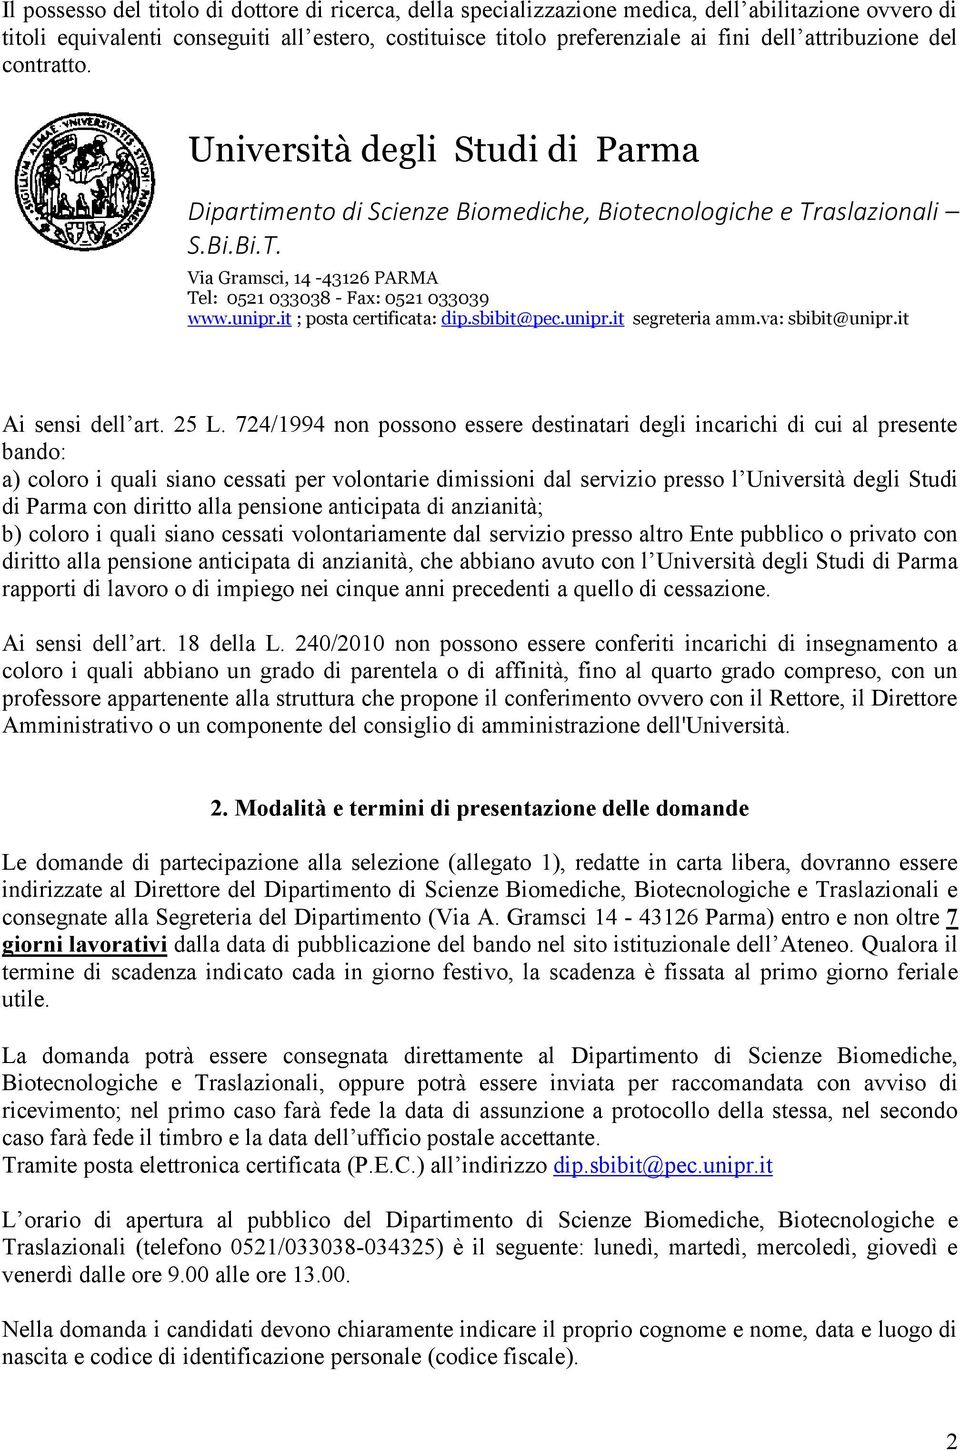 724/1994 non possono essere destinatari degli incarichi di cui al presente bando: a) coloro i quali siano cessati per volontarie dimissioni dal servizio presso l Università degli Studi di Parma con